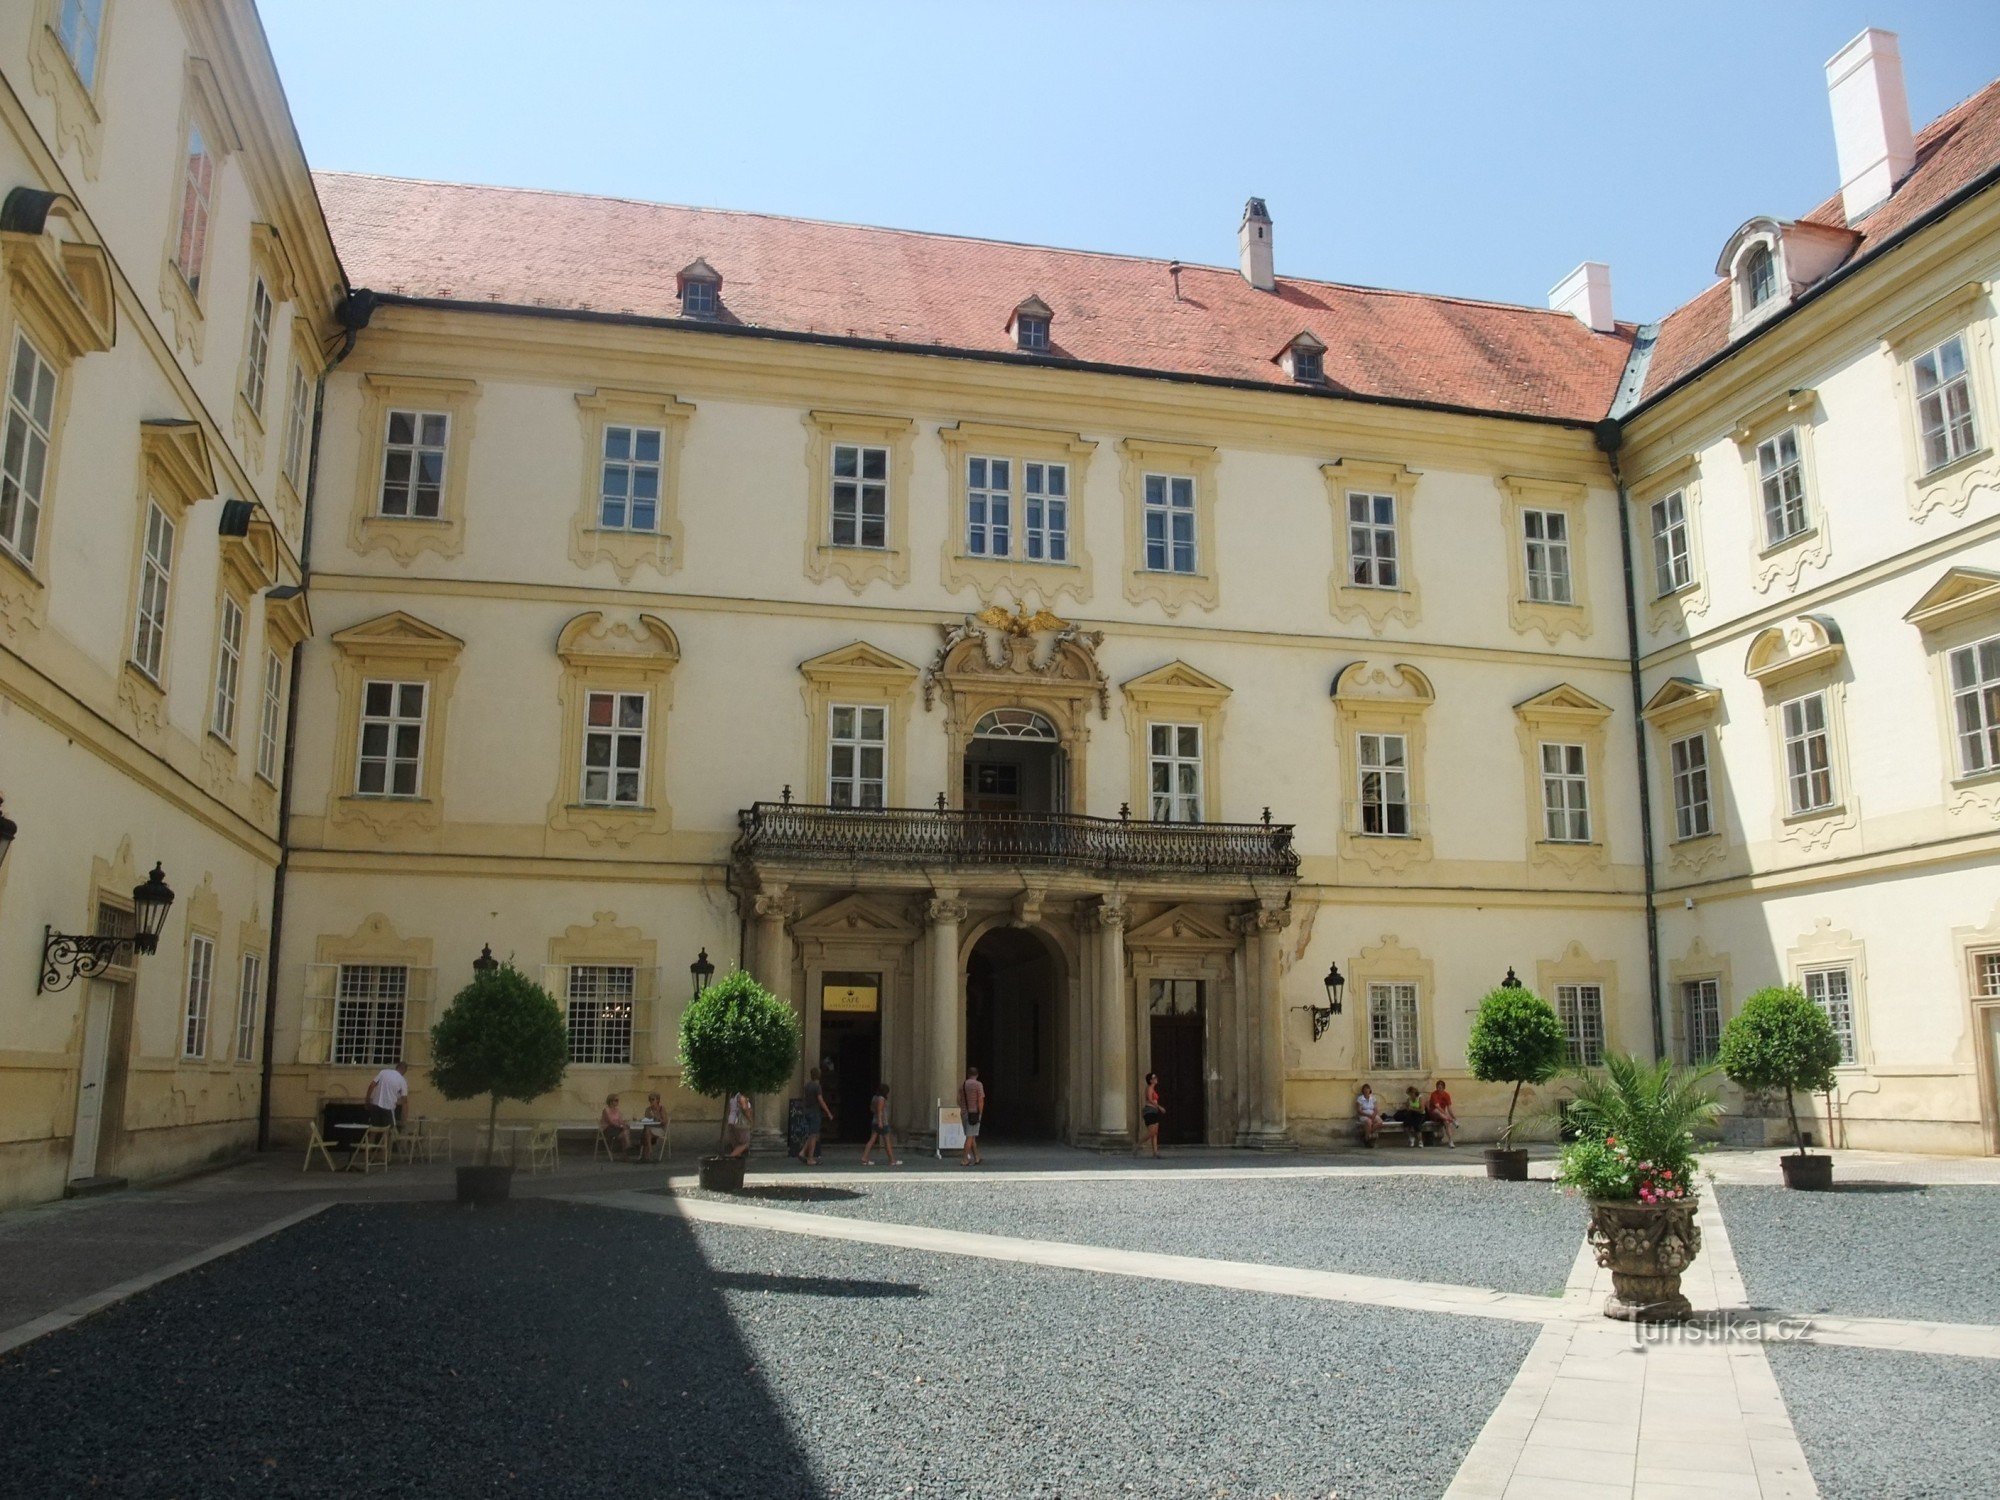 Κάστρο Valtice - η πρώην αρχοντική κατοικία της οικογένειας του Λιχτενστάιν